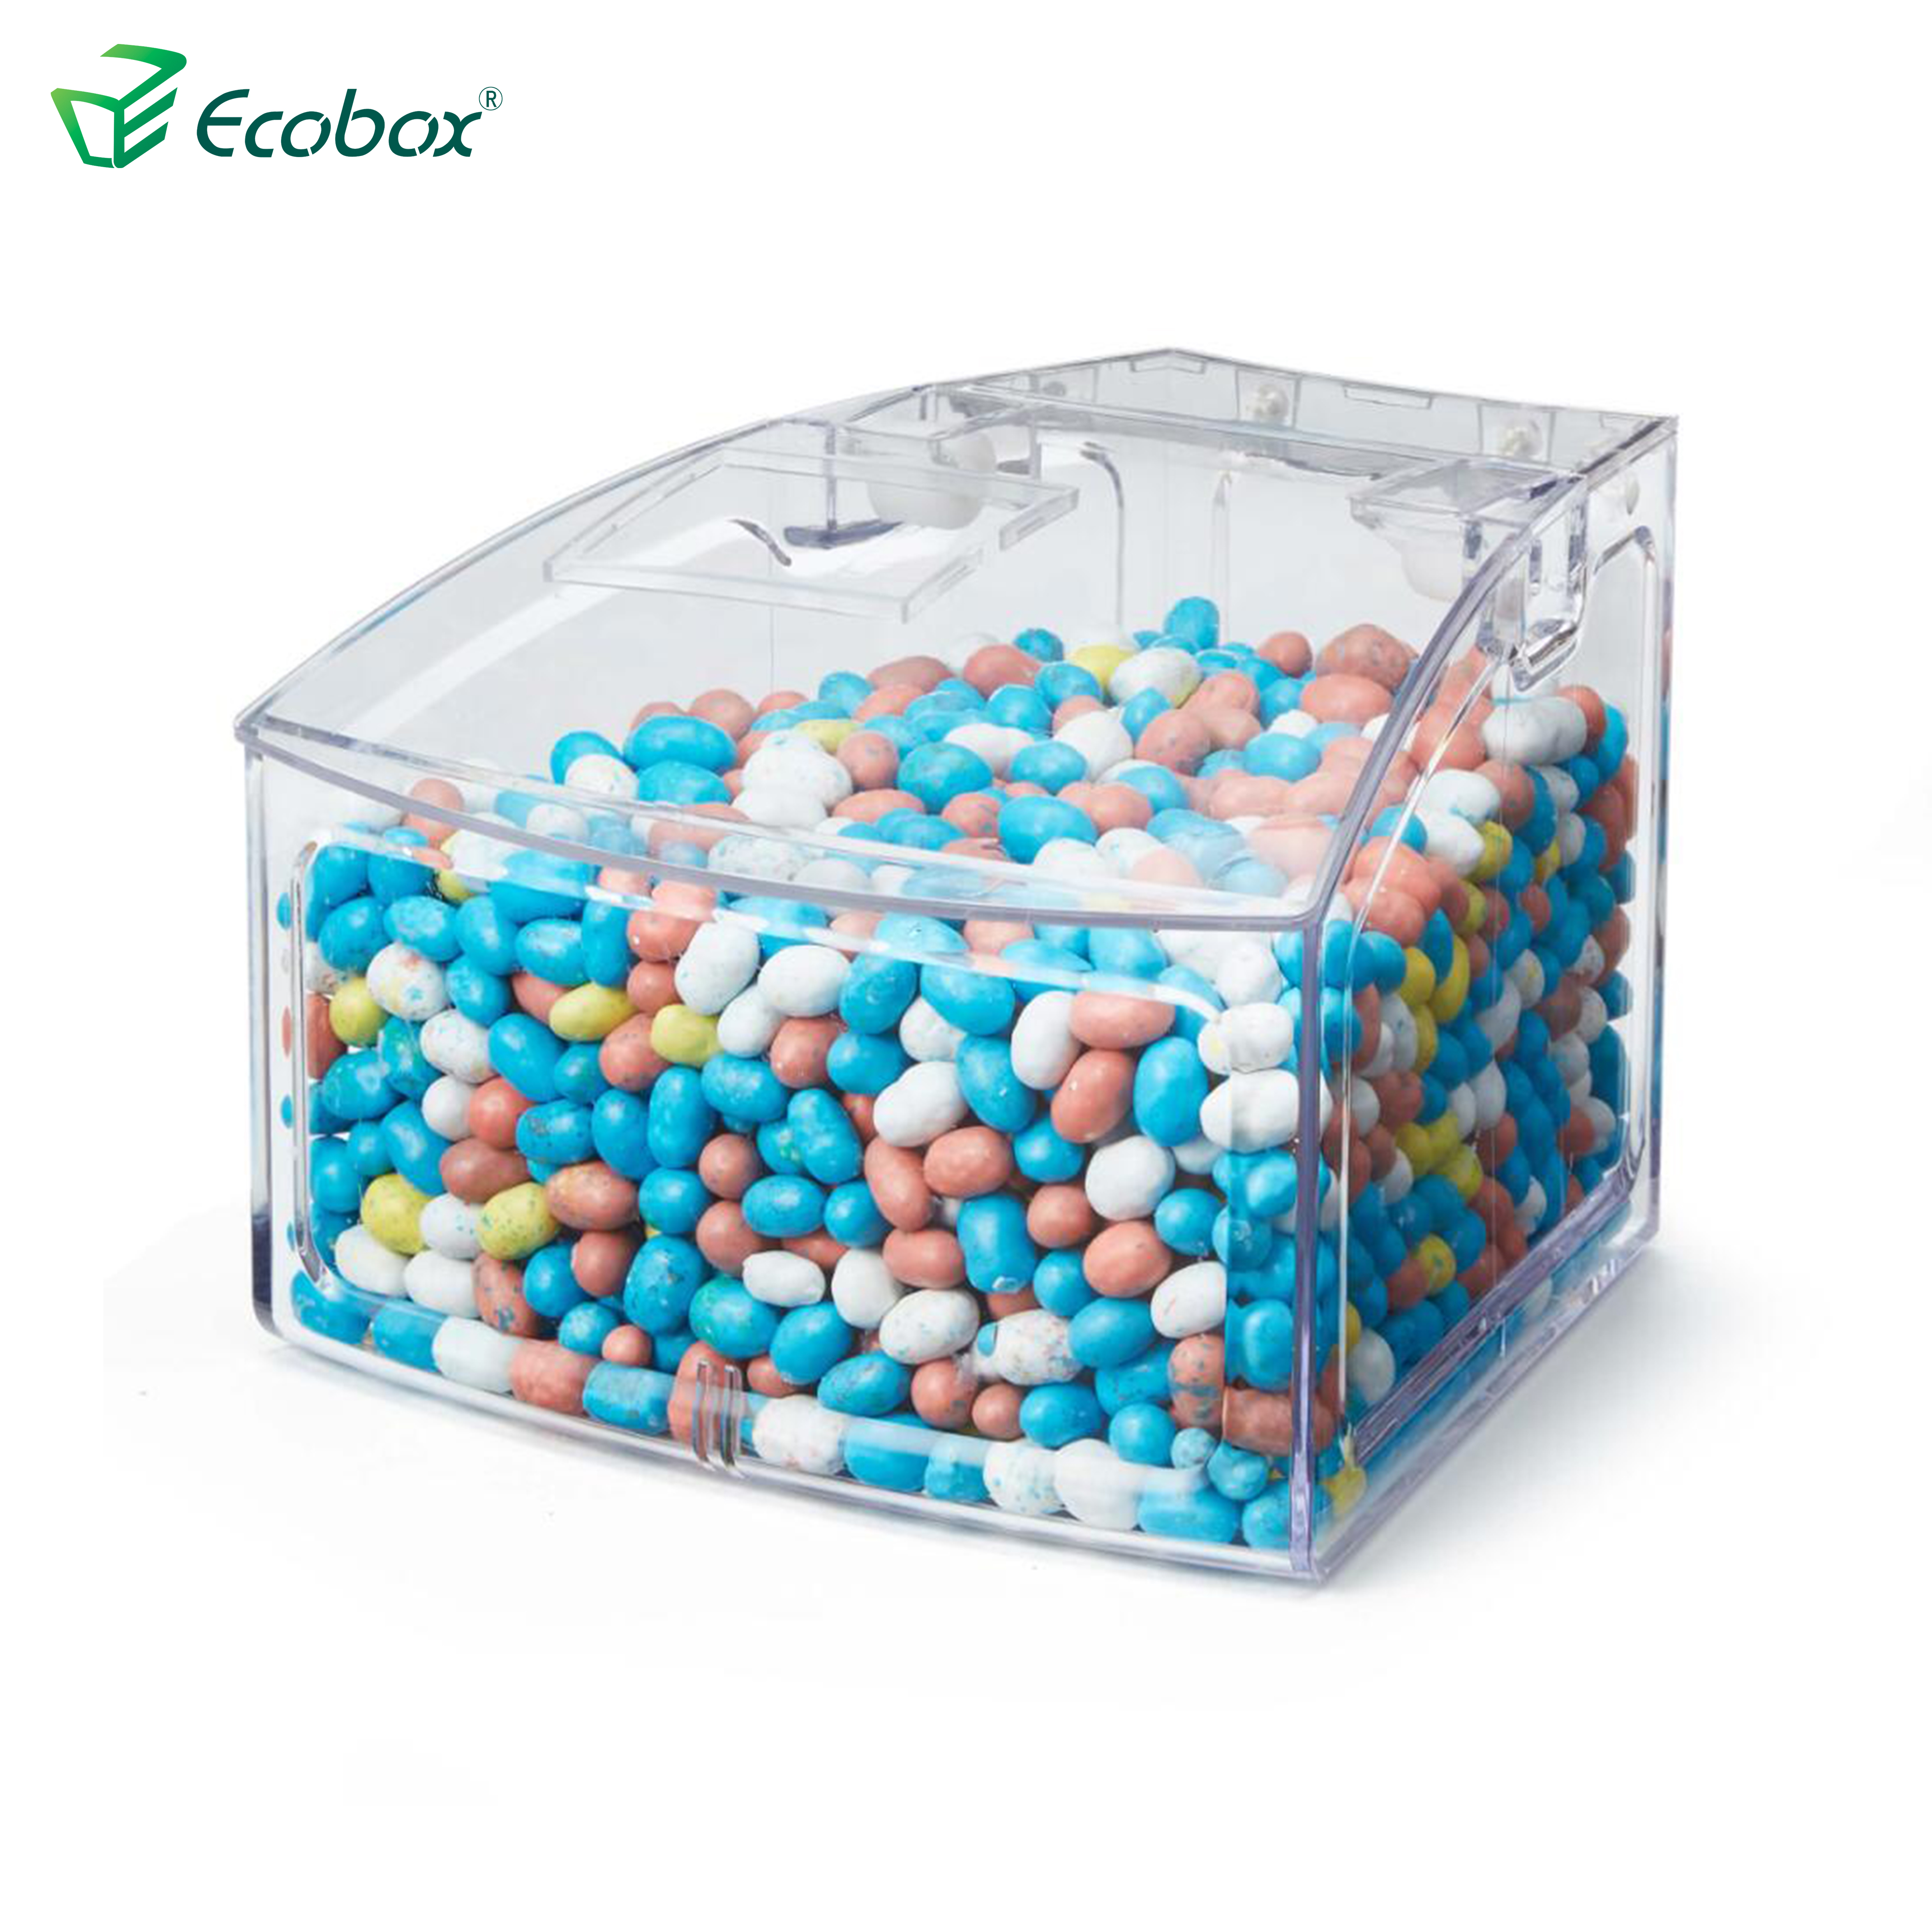 Ecobox SPH-010 Caixote de alimentos a granel pequeno em forma de arco para prateleira de supermercado